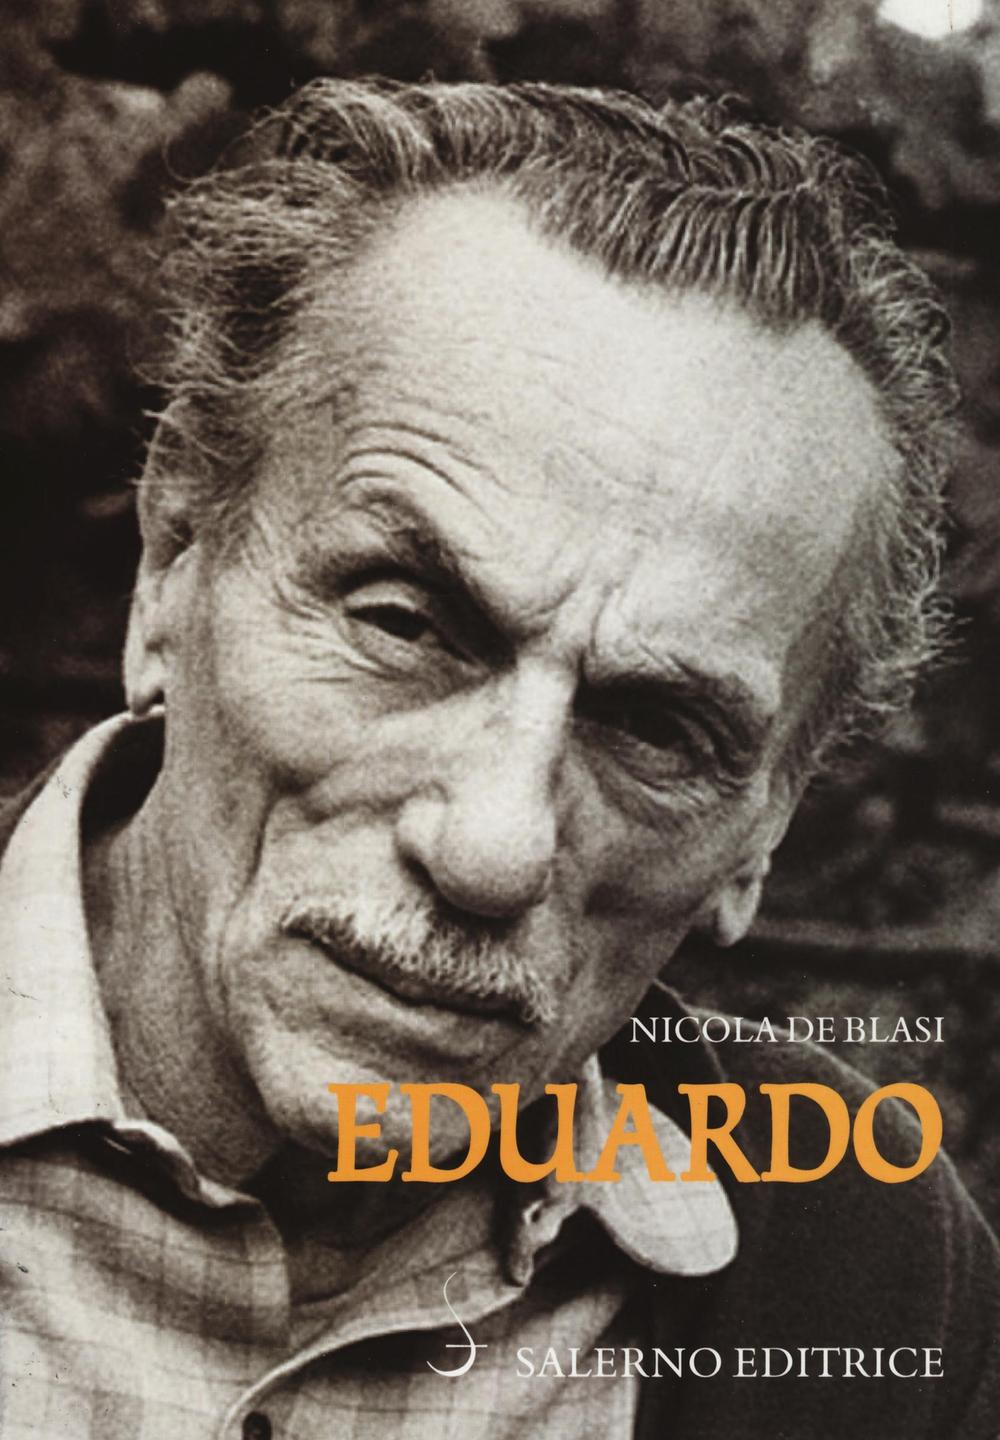 Libri De Blasi Nicola - Eduardo NUOVO SIGILLATO, EDIZIONE DEL 10/11/2016 SUBITO DISPONIBILE